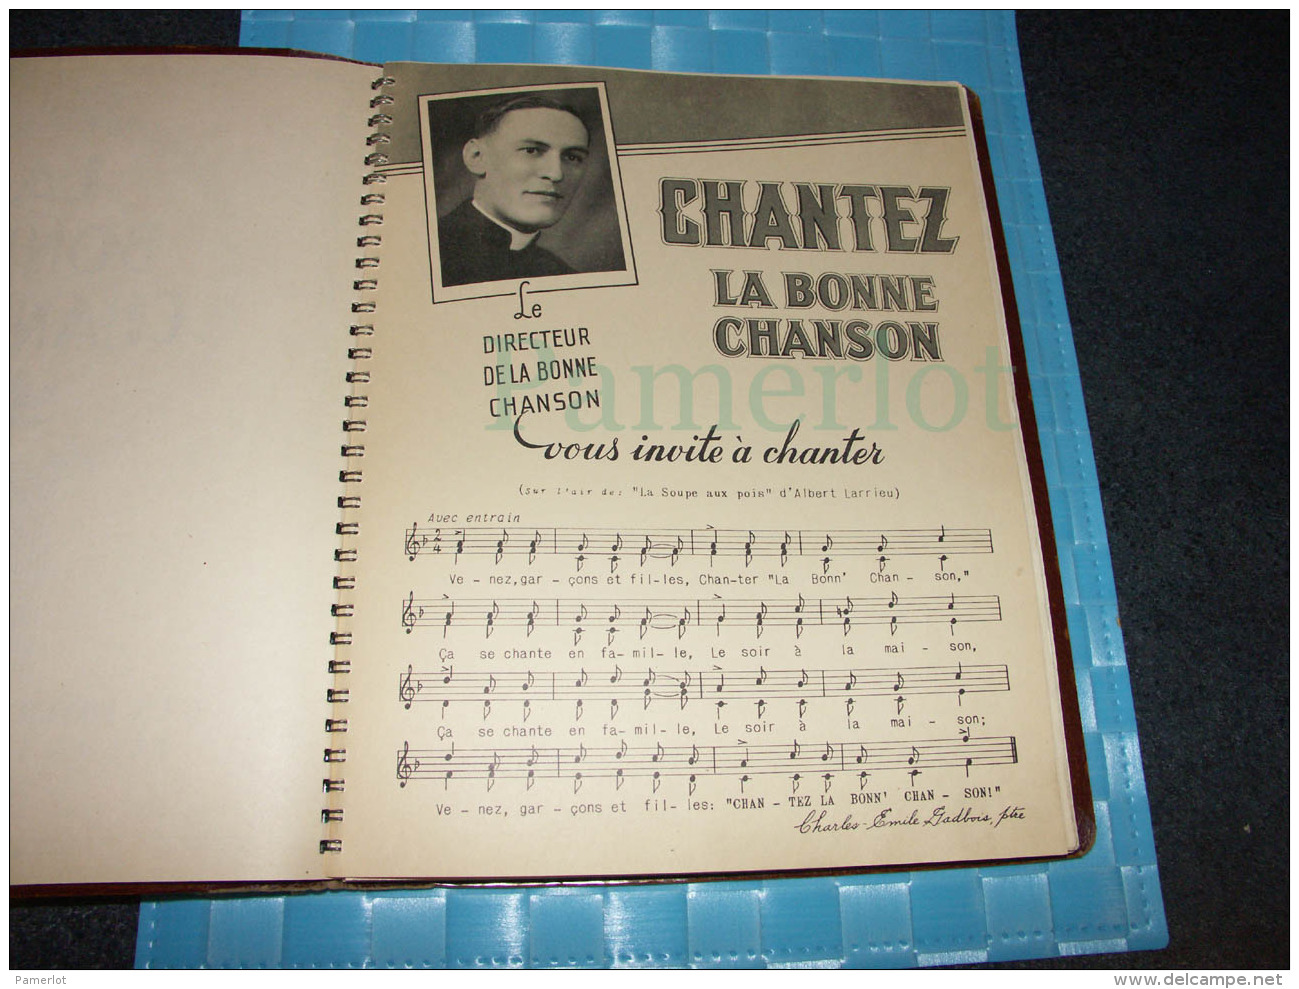 Seminaire De St-Hyacinthe, La Bonne Chanson Par Charles-Emile Gadbois Ptre, 1938 - Musique